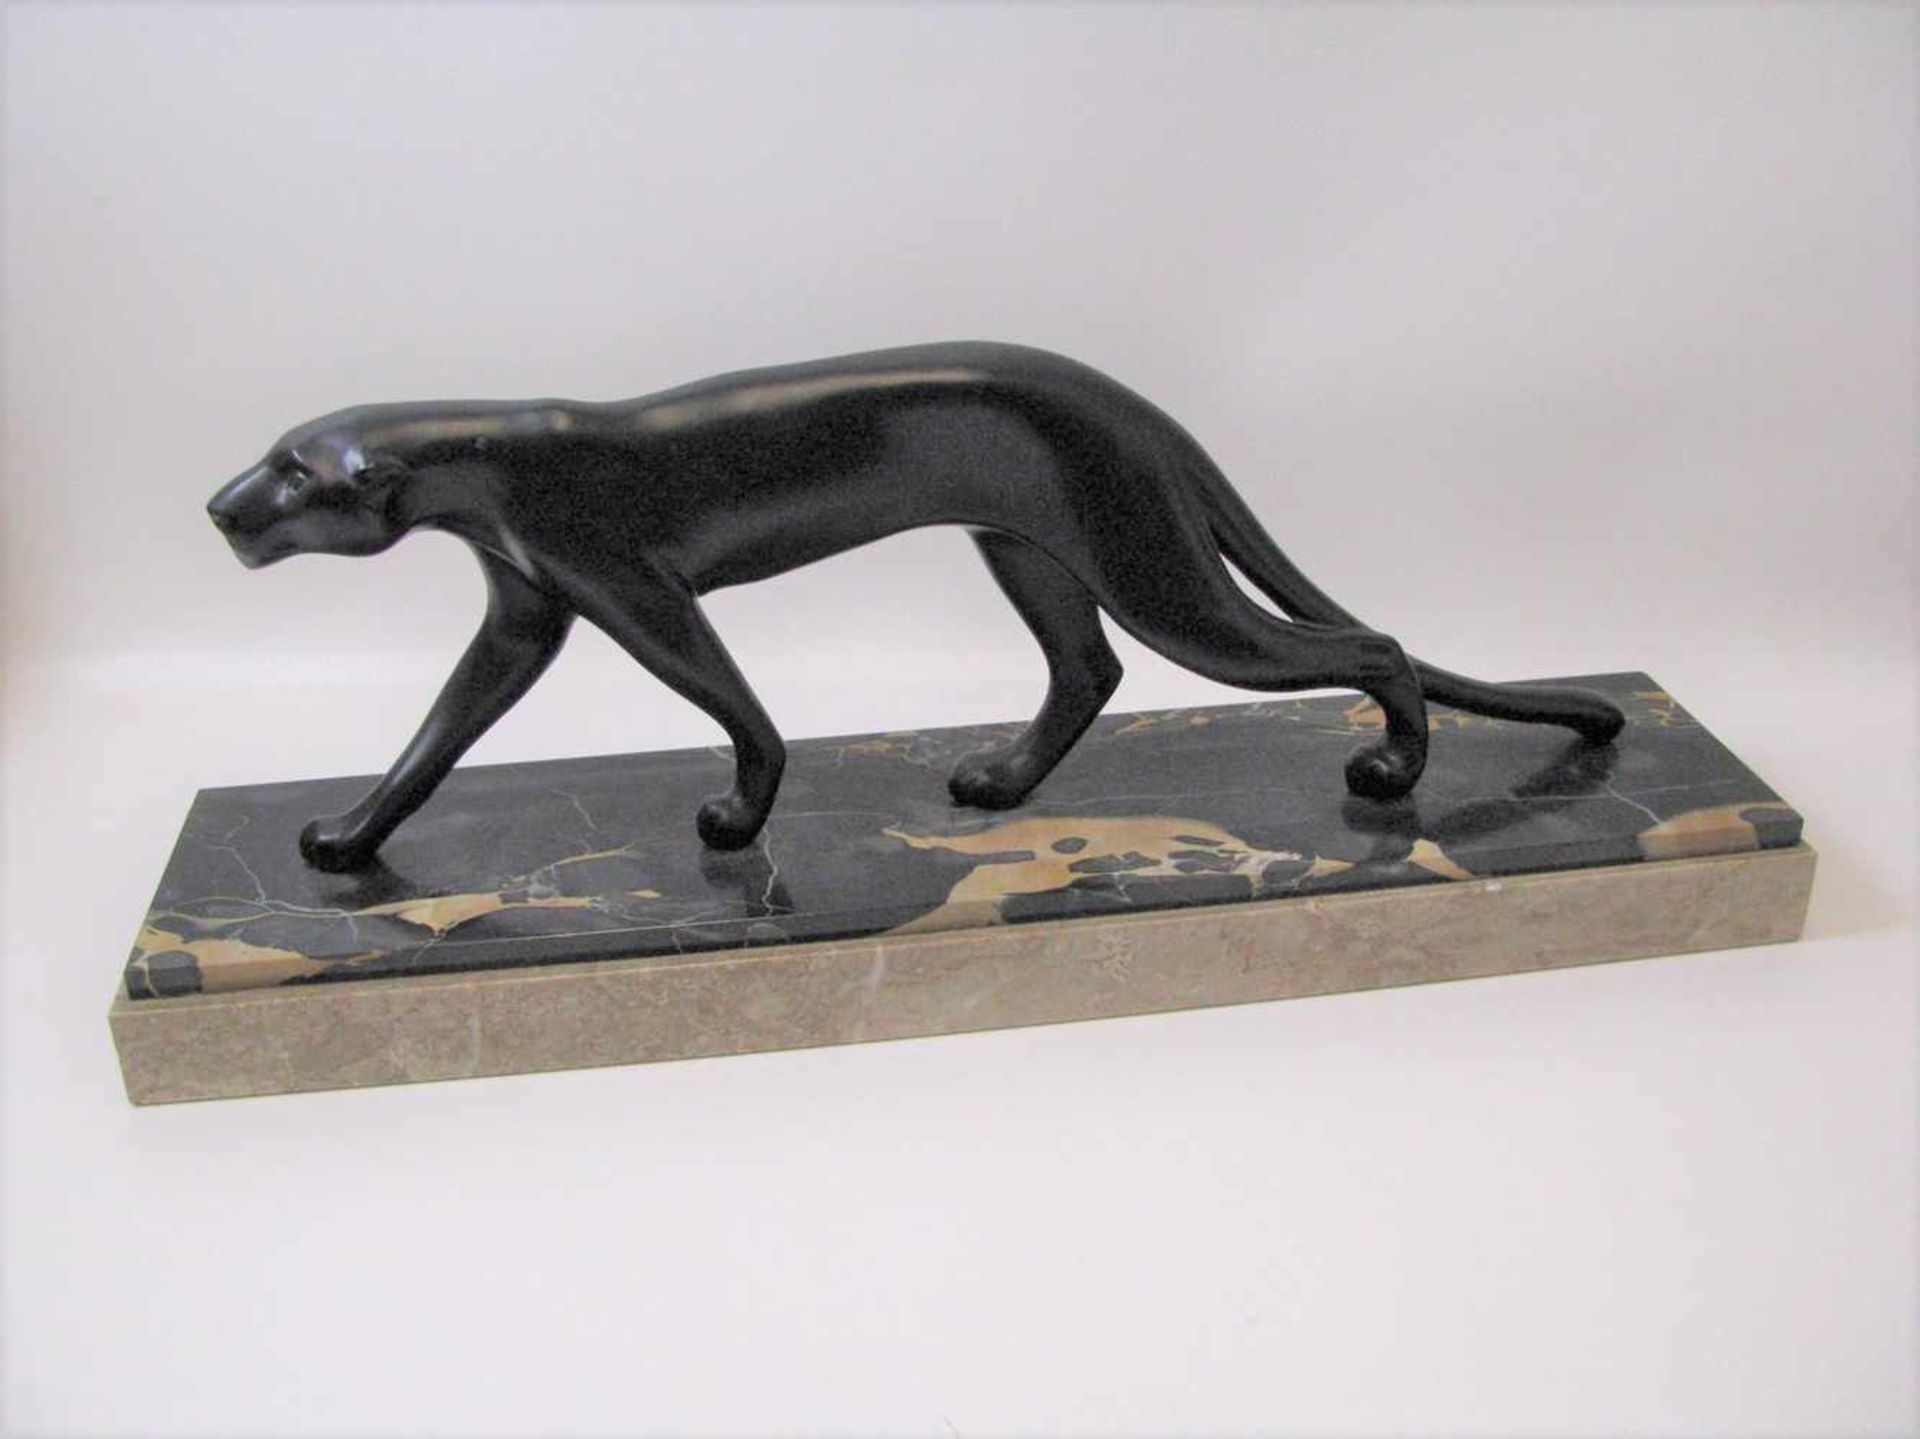 Font, Marti, Französischer Bildhauer, "Schreitender Panther", Art déco, um 1910/20, Eisenguss,